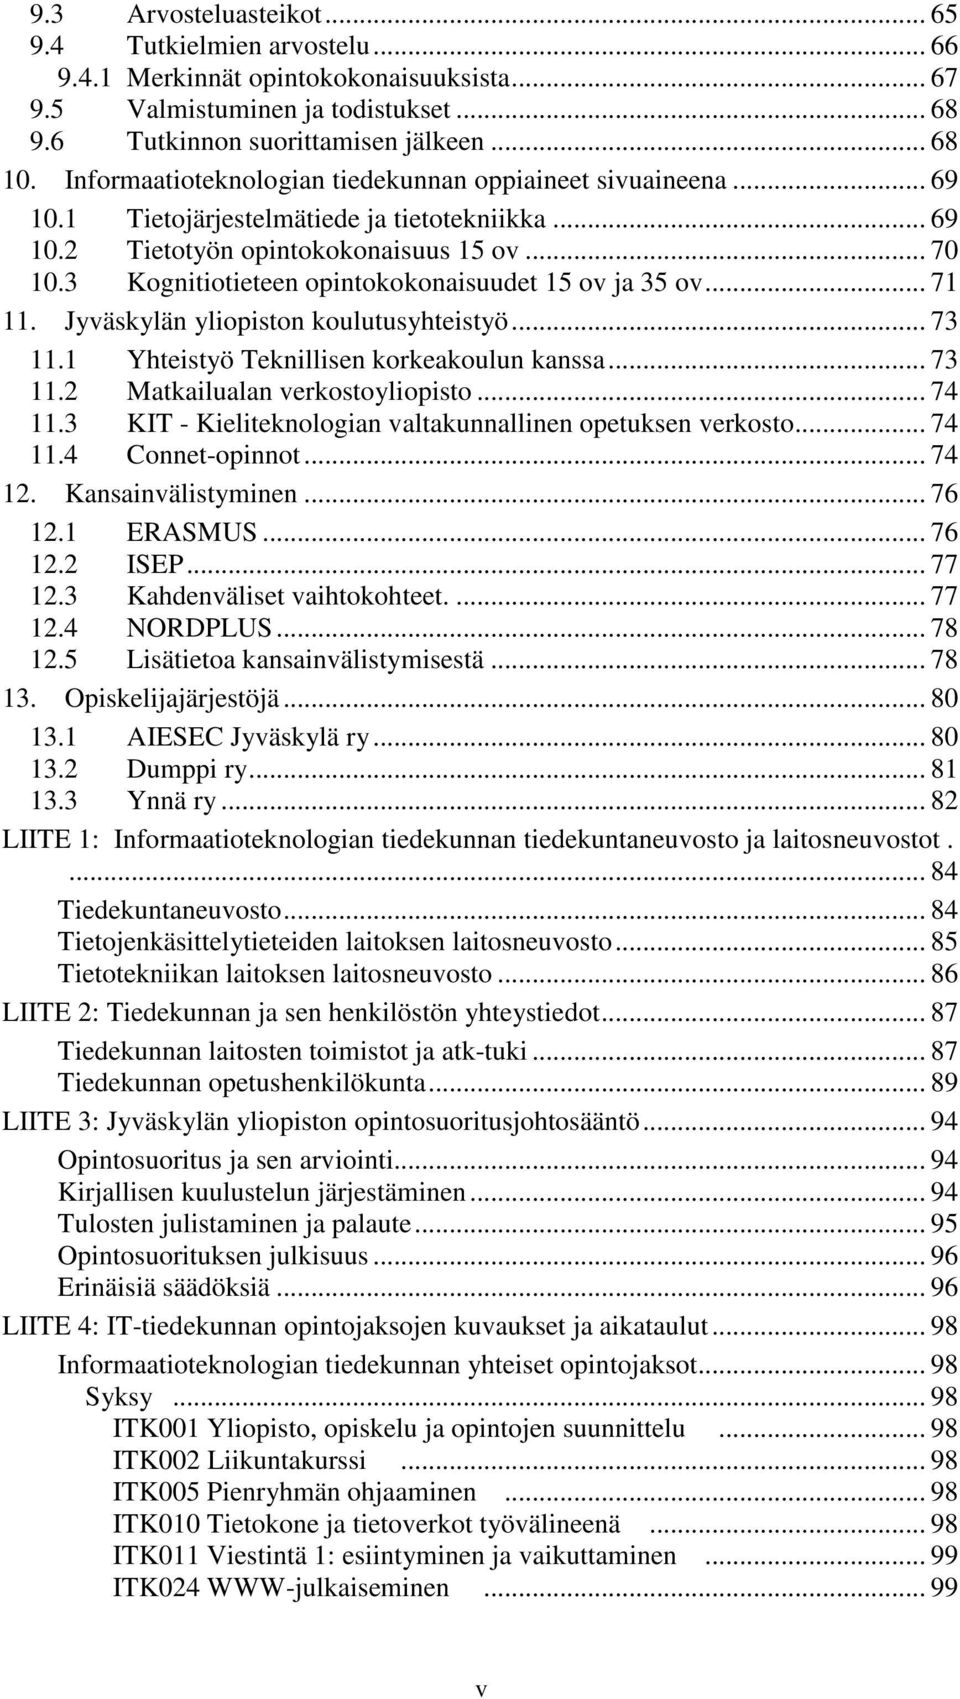 3 Kognitiotieteen opintokokonaisuudet 15 ov ja 35 ov... 71 11. Jyväskylän yliopiston koulutusyhteistyö... 73 11.1 Yhteistyö Teknillisen korkeakoulun kanssa... 73 11.2 Matkailualan verkostoyliopisto.